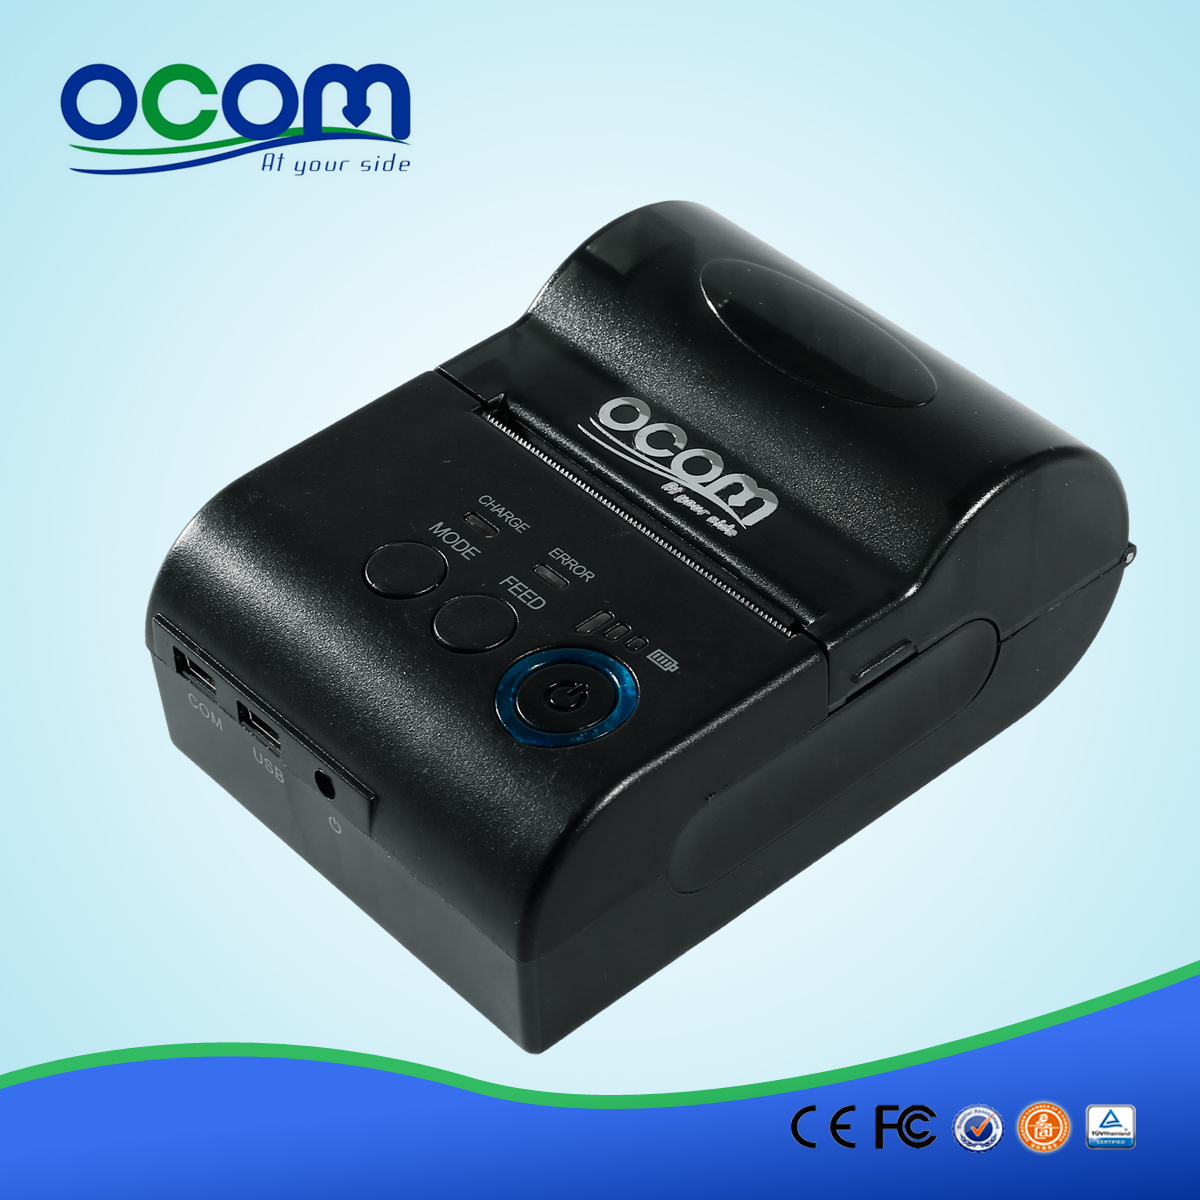 OCPP-M03: termiczna drukarka poz tani, drukarka termiczna drukarka Android poz